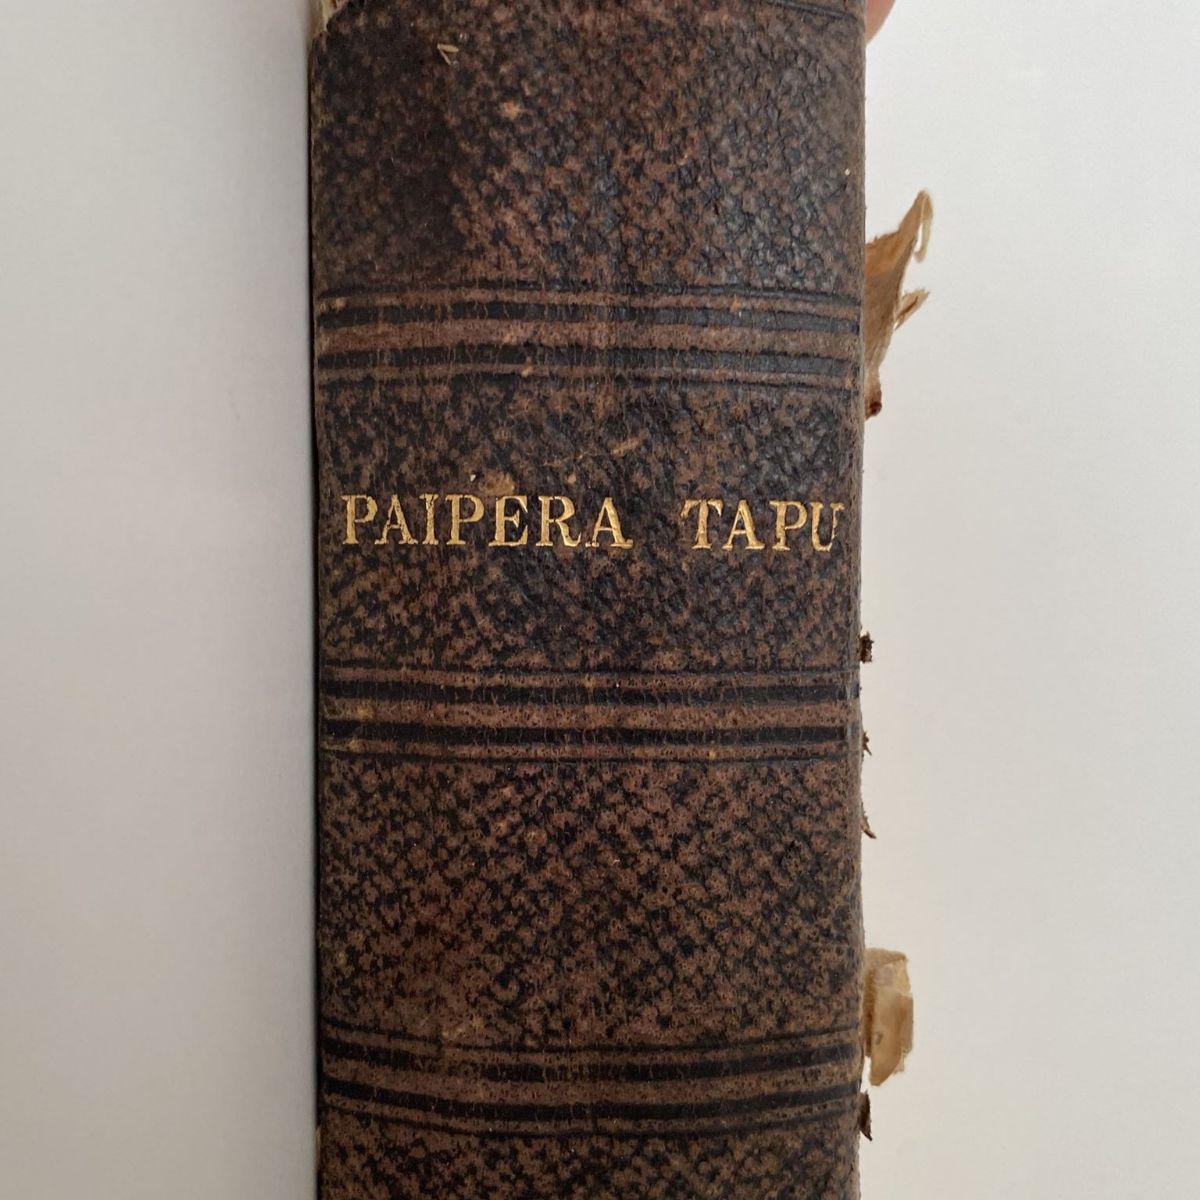 Ko Te PAIPERA TAPU: The Holy Bible in Te Reo Maori